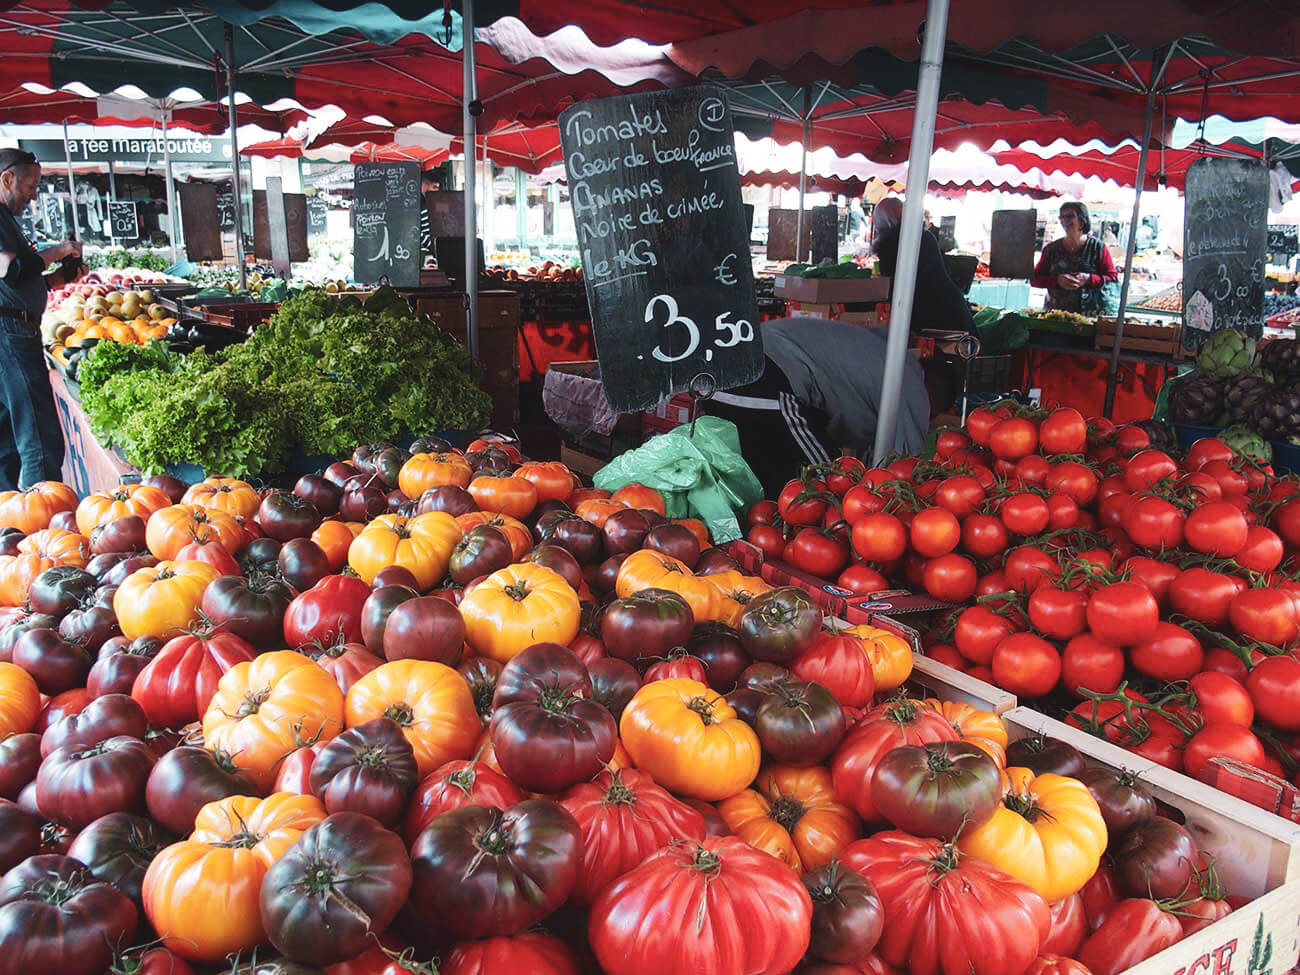 Tomaten in verschiedenen Farben und Größen